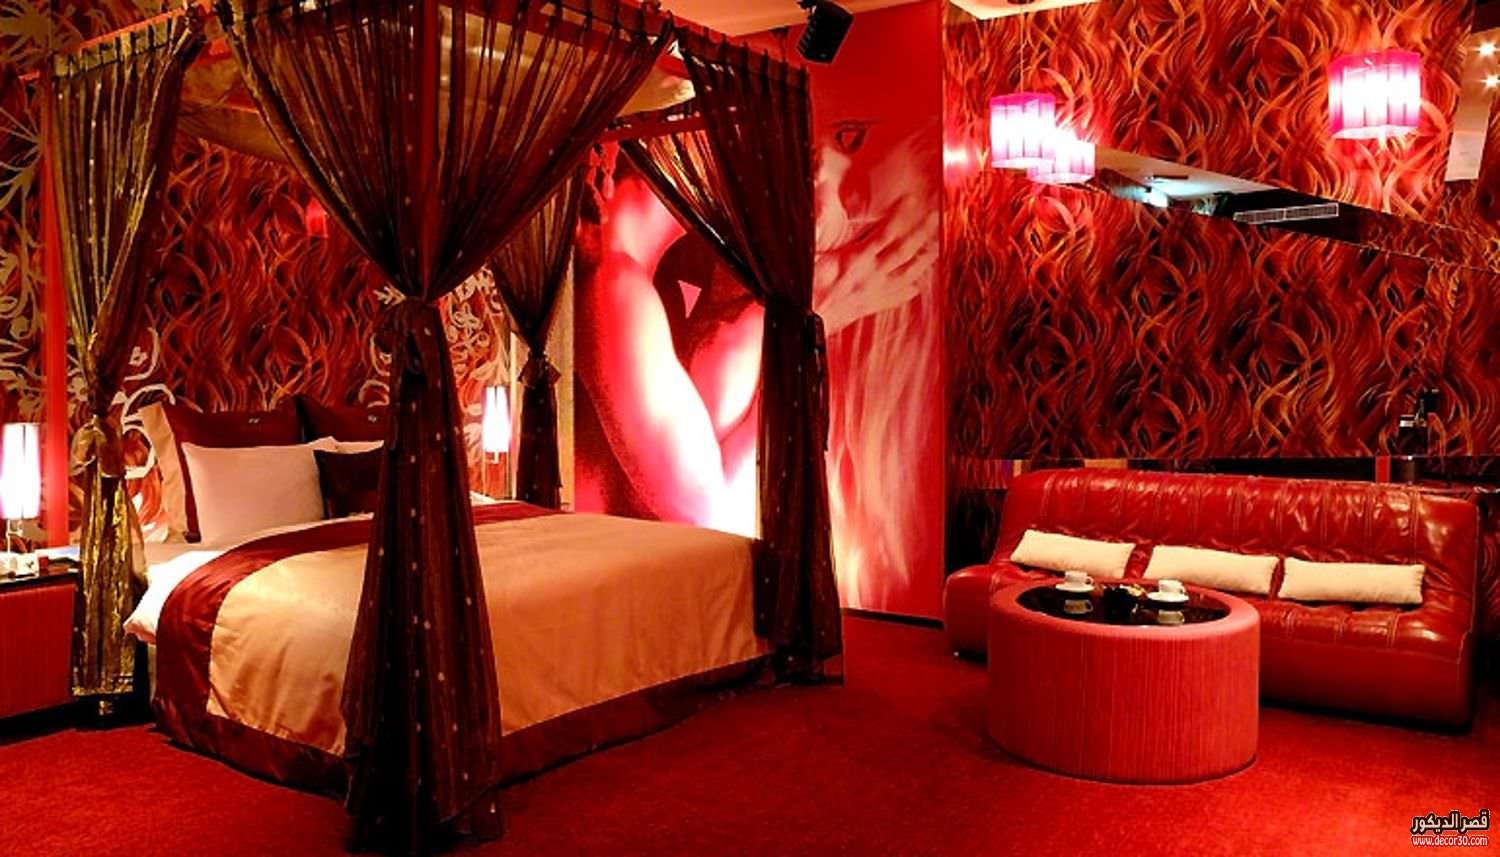 Бордель кровати. Спальня в эротическом стиле. Спальня для утех. Роскошная красная спальня. Спальня в борделе.